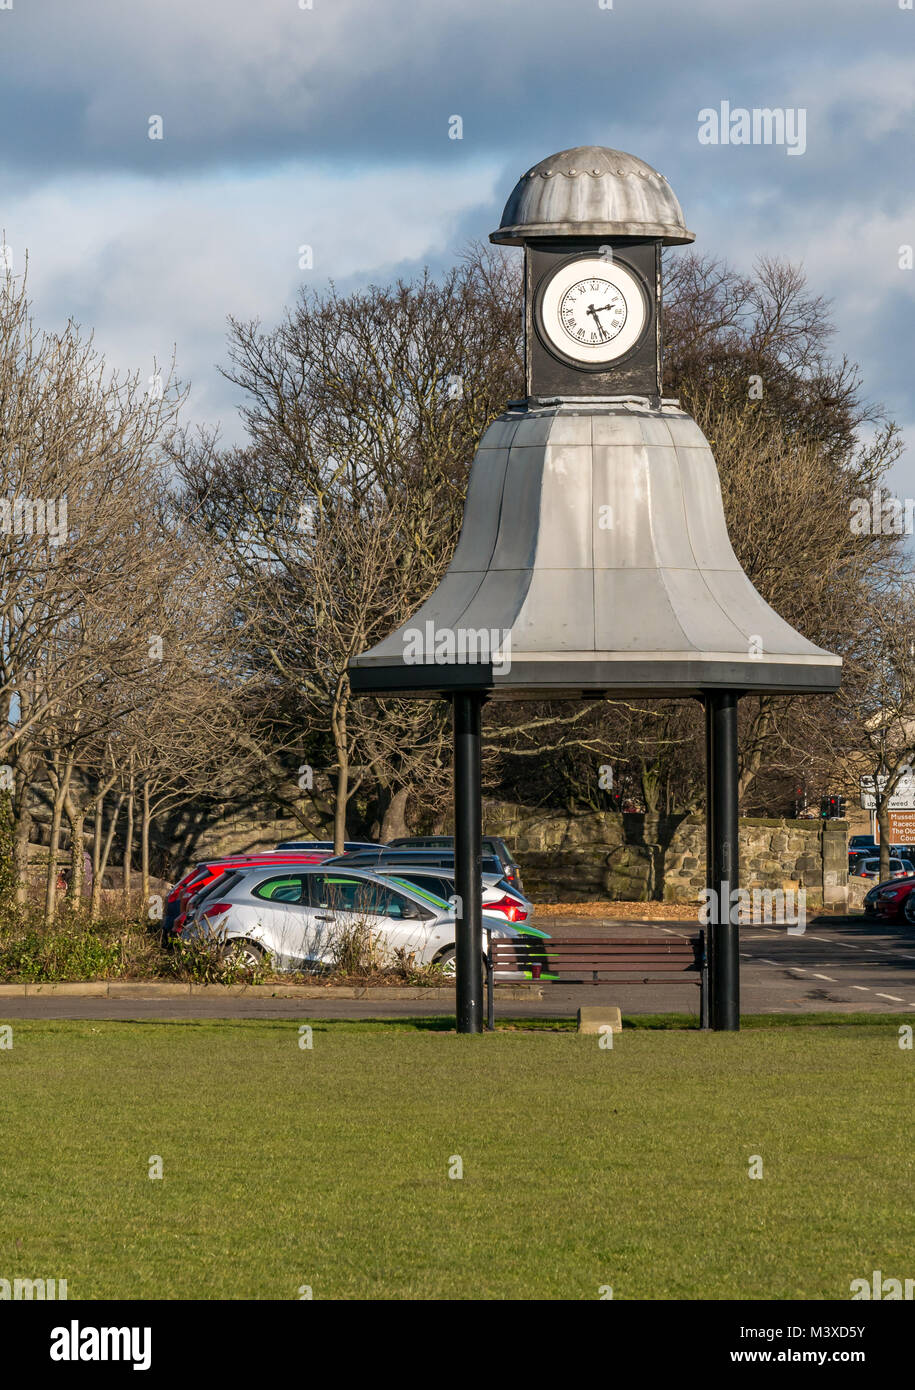 Vecchio orologio Hayweights con tempo di pomeriggio, centro commerciale Avenue, Musselburgh, East Lothian, Scozia UK, con auto nel parcheggio auto Foto Stock